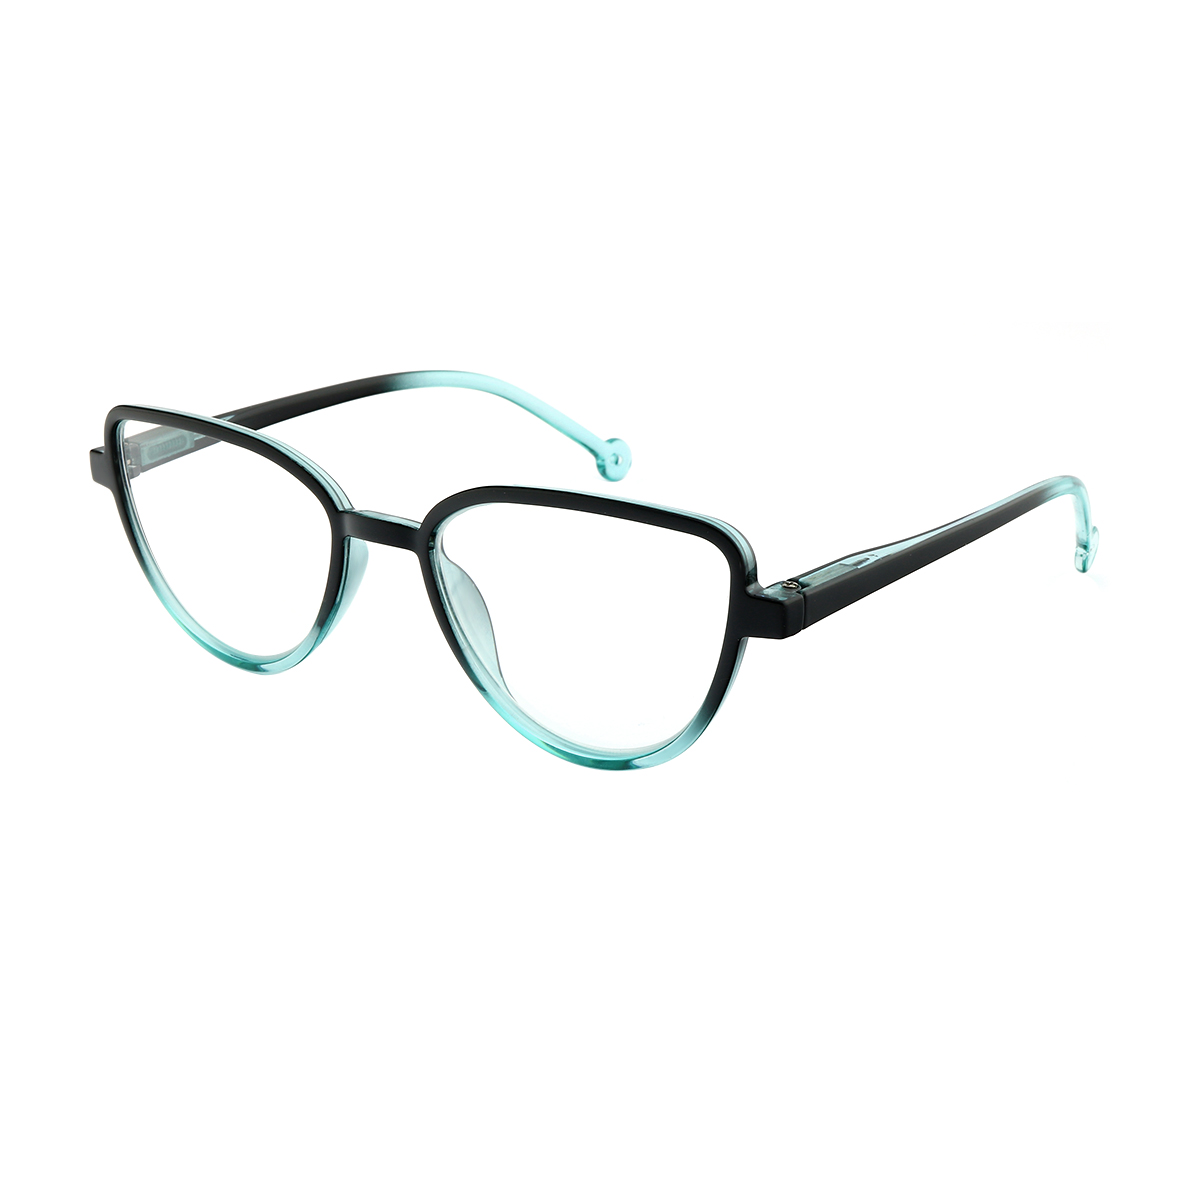 Glen - Cat-eye Blue Reading Glasses for Women